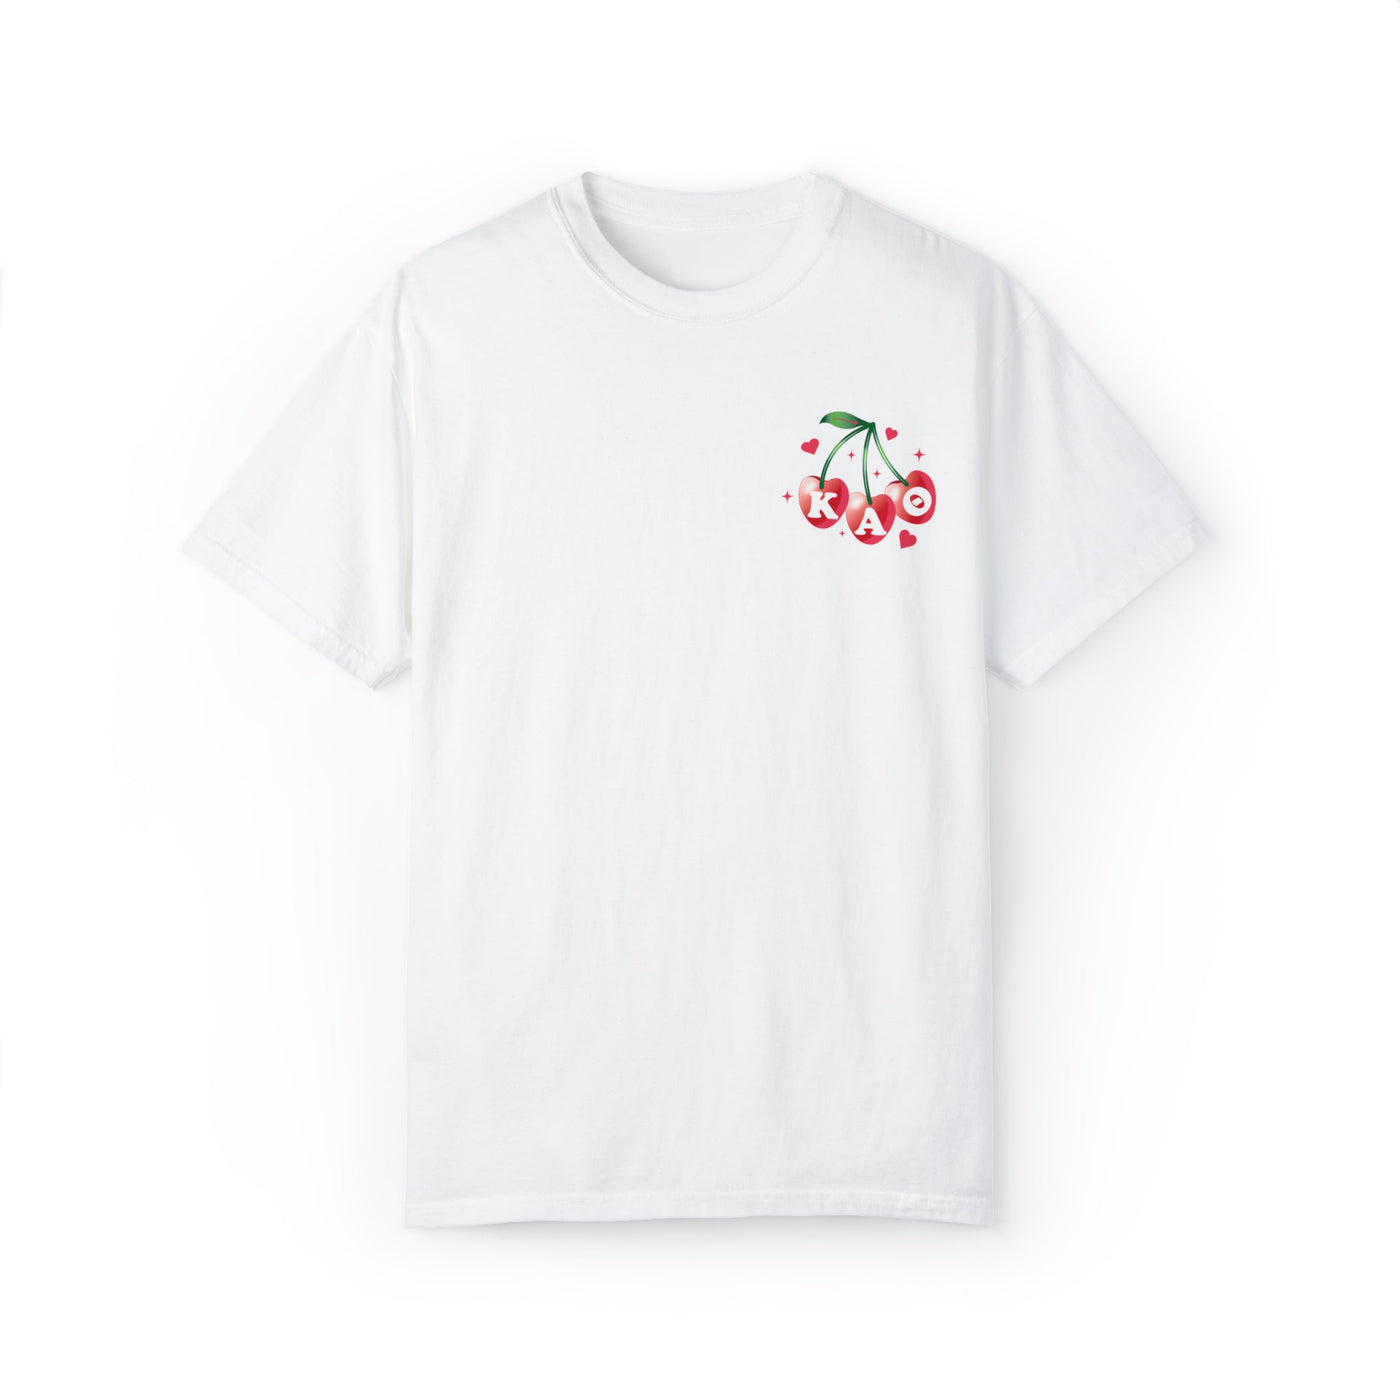 Kappa Alpha Theta Cherry Airbrush Sorority T-shirt